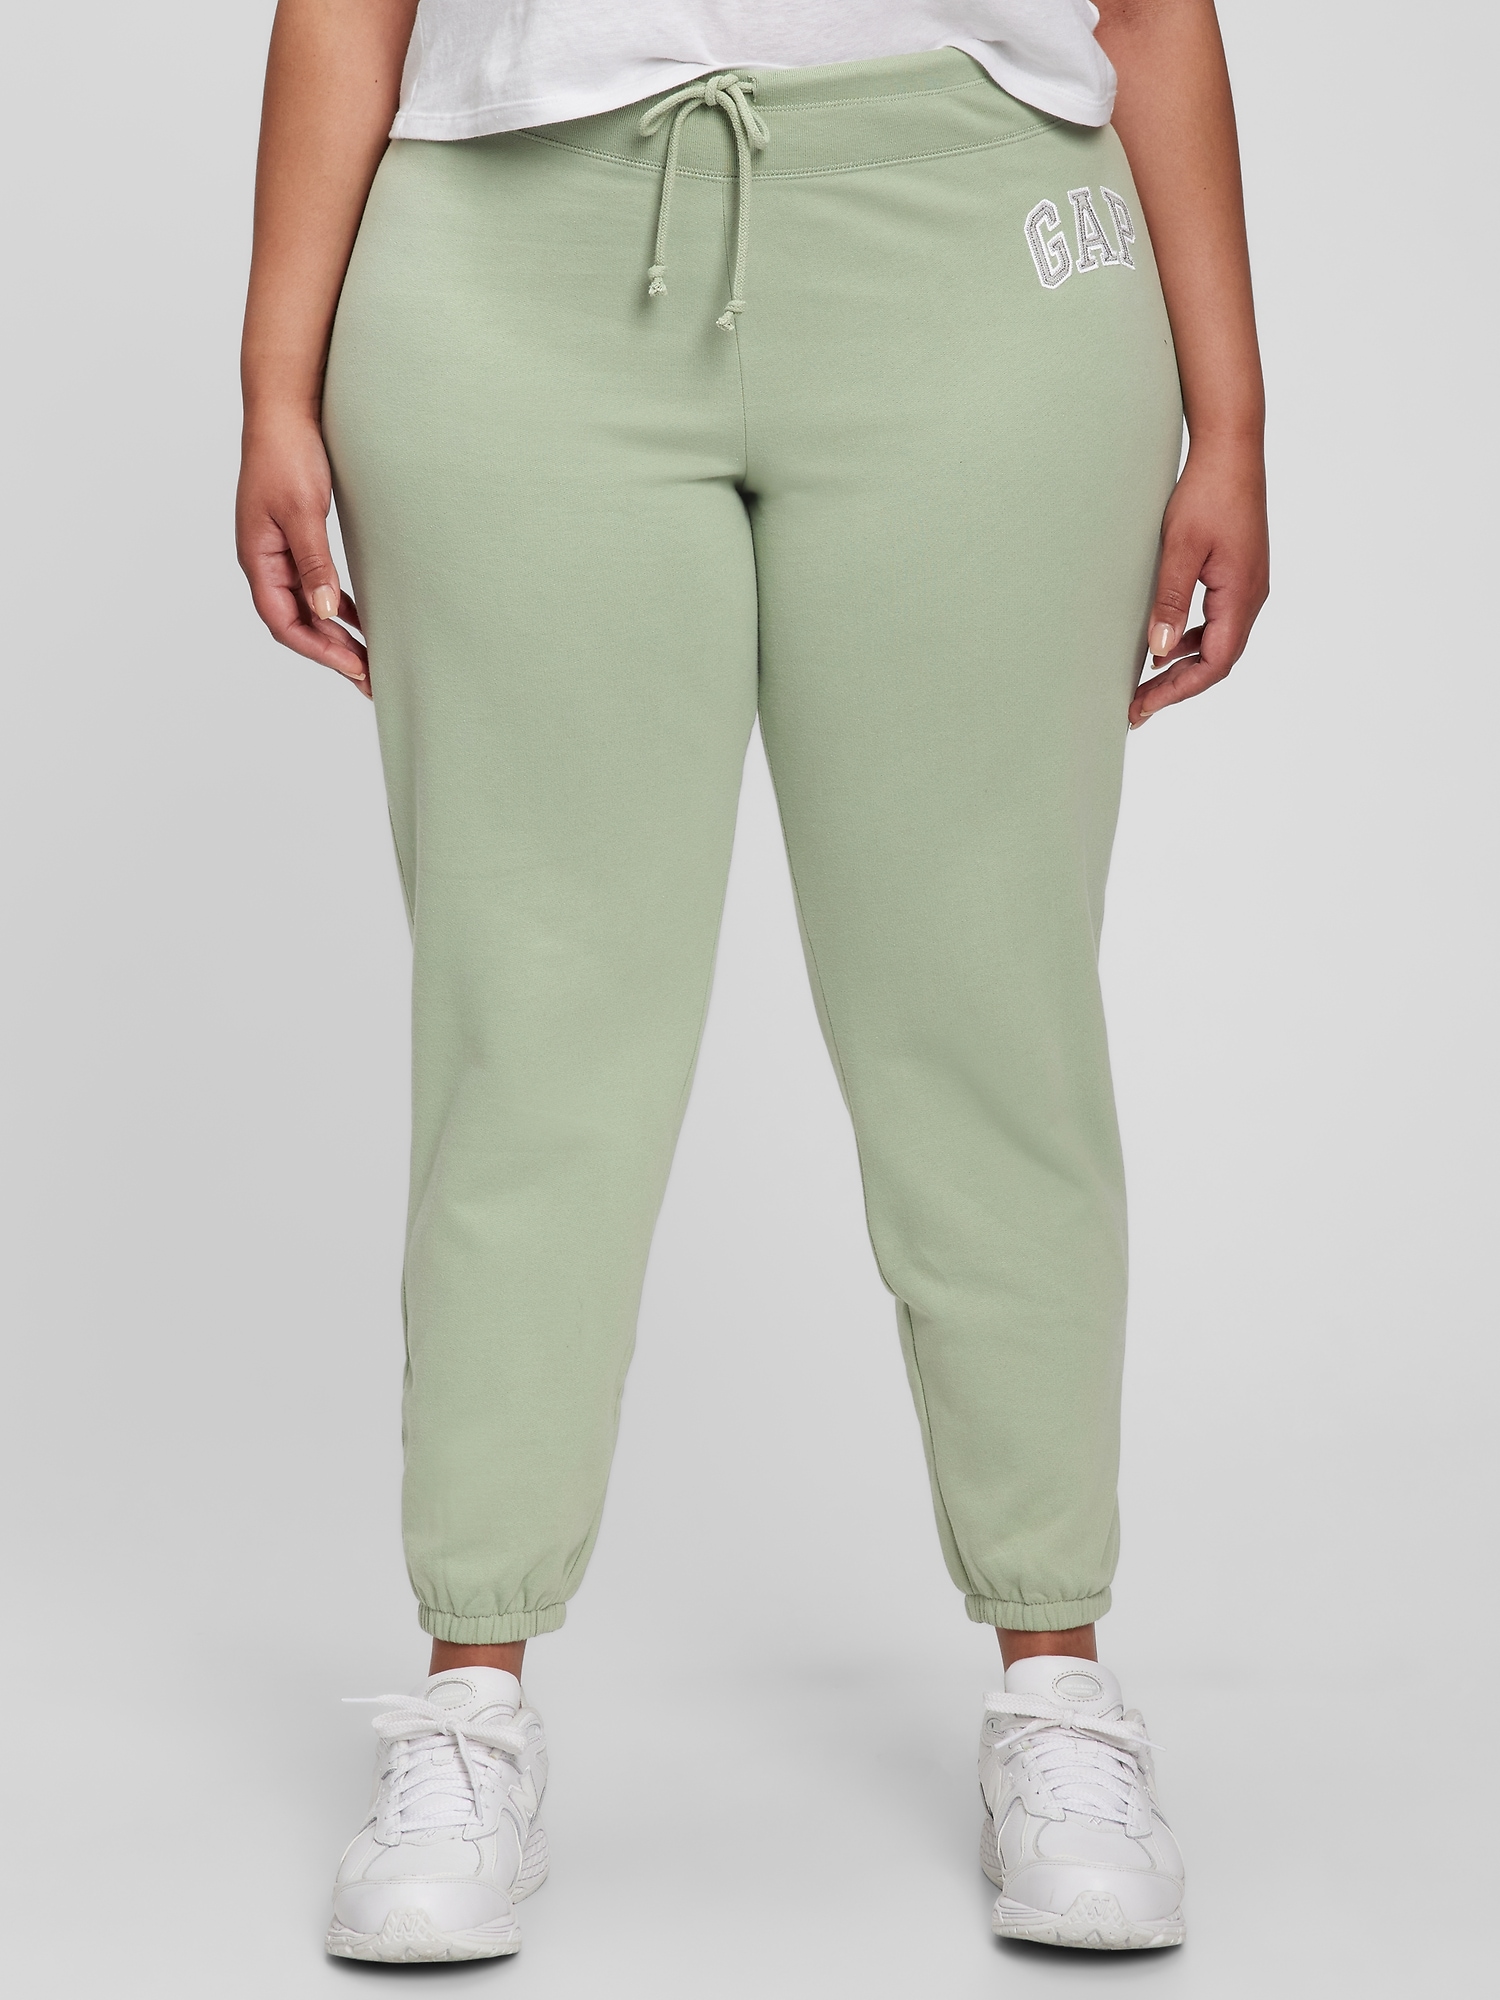 Gap Womens Sweatpants Fleece Lined Lounge Sleep Wear Joggers Stretch Arch Logo 